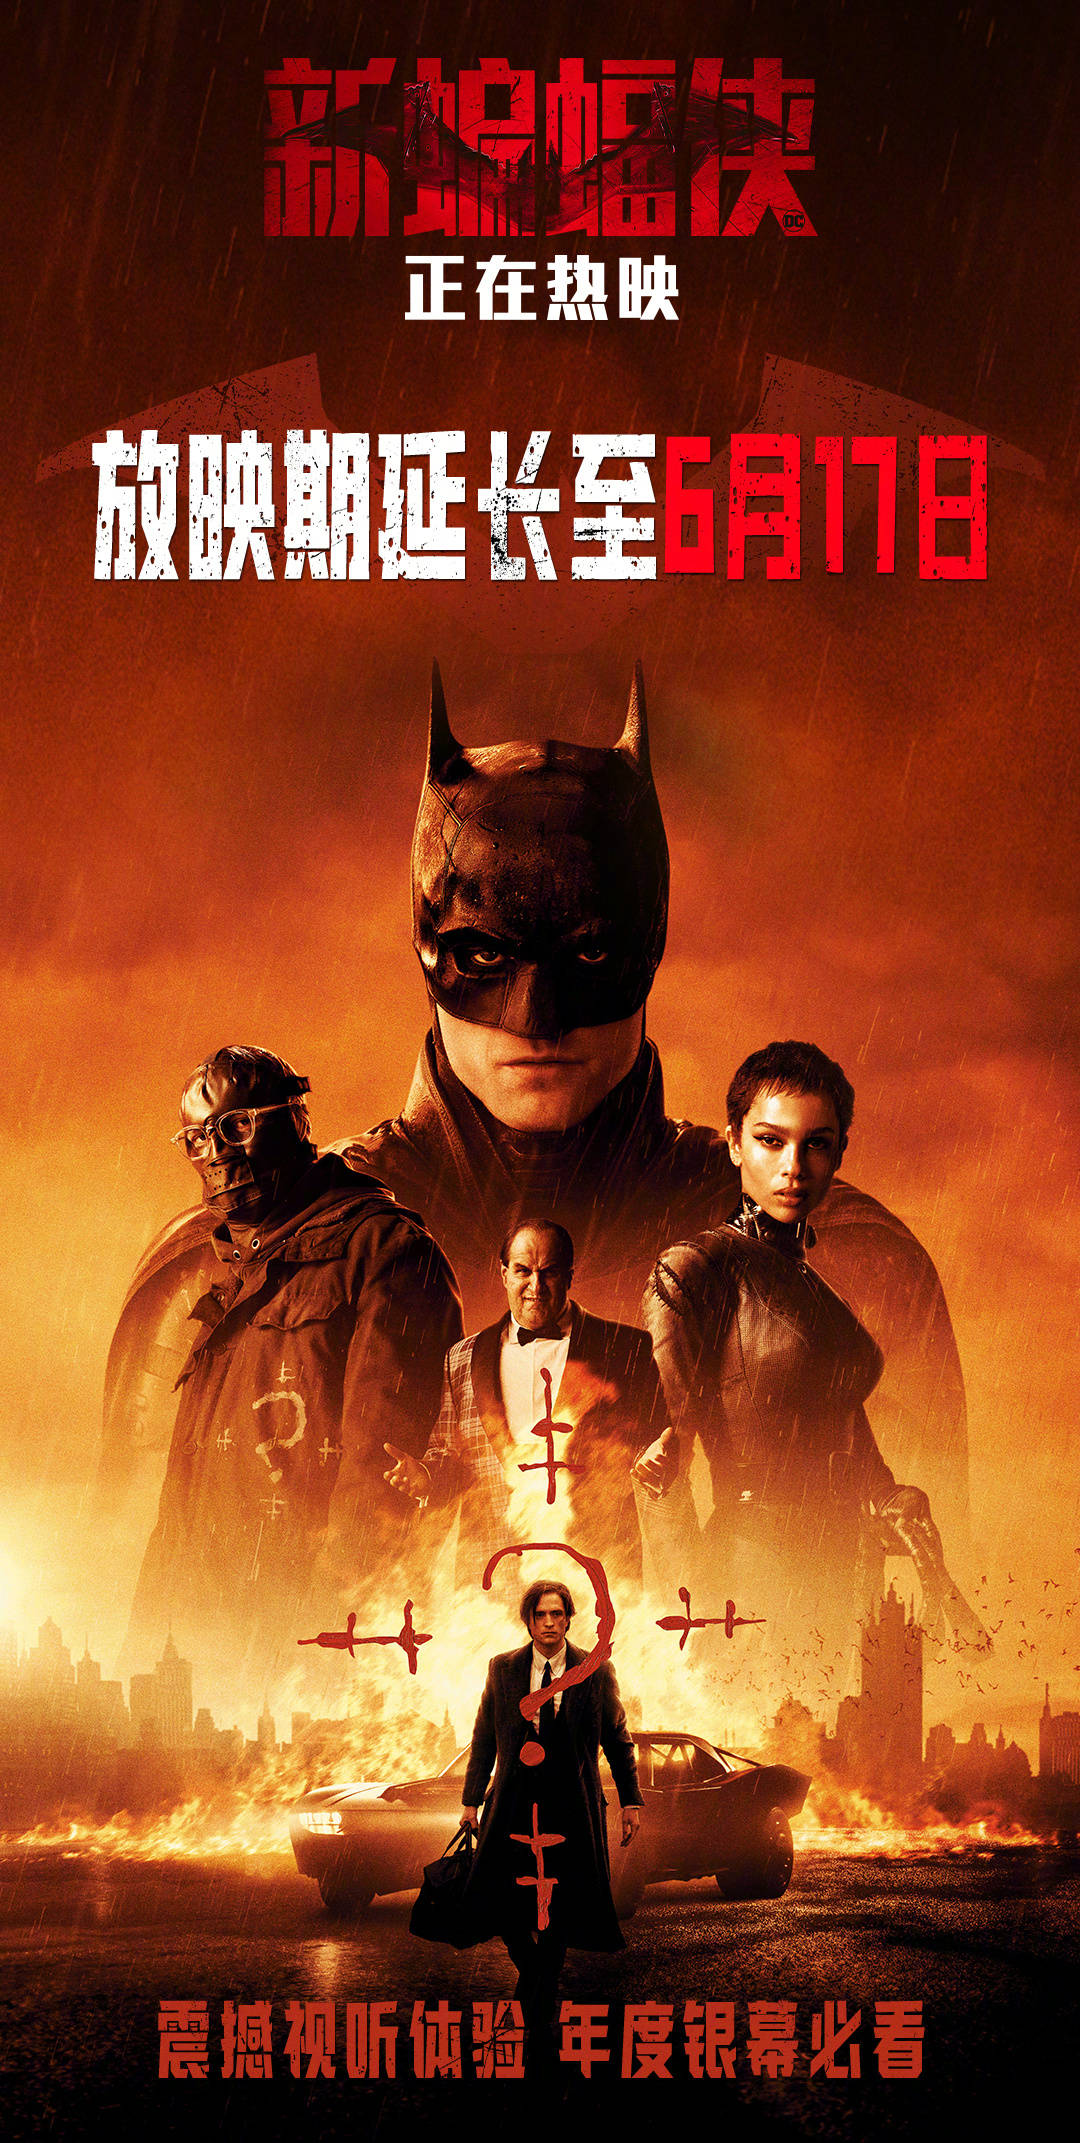 电影《新蝙蝠侠》再次延长上映 延长至6月17日